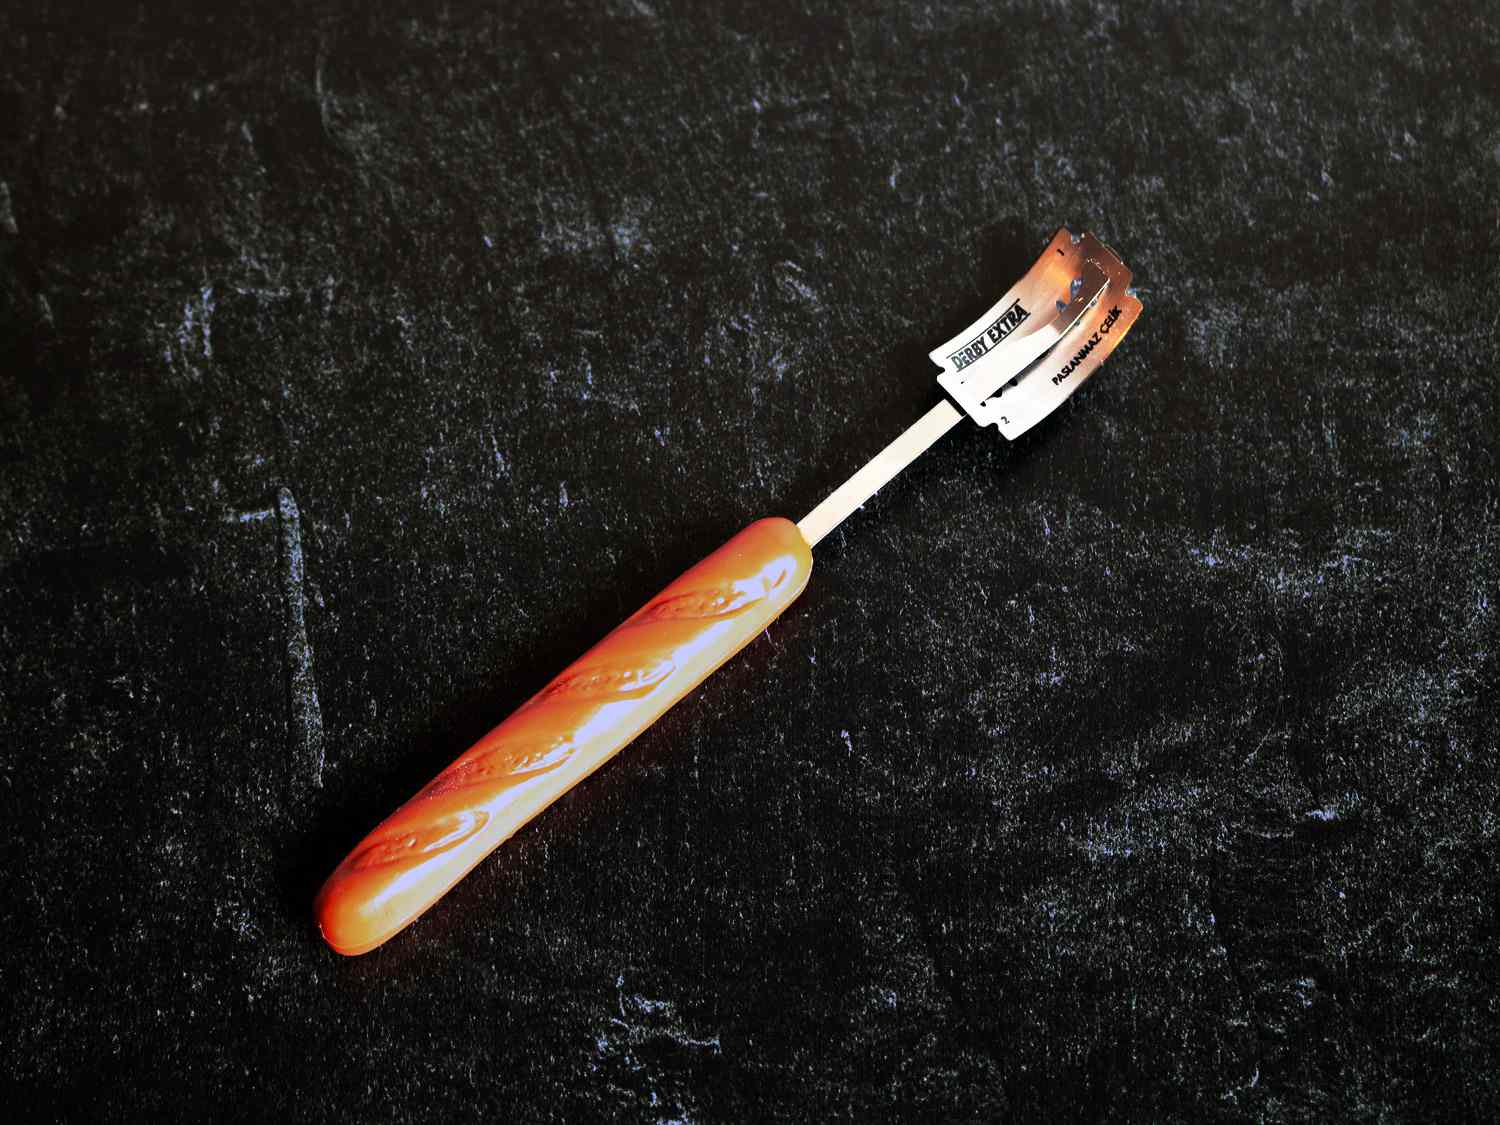 长棍柄:长棍状的柄，附在一根细金属棒上，用来在面包面团上刻痕